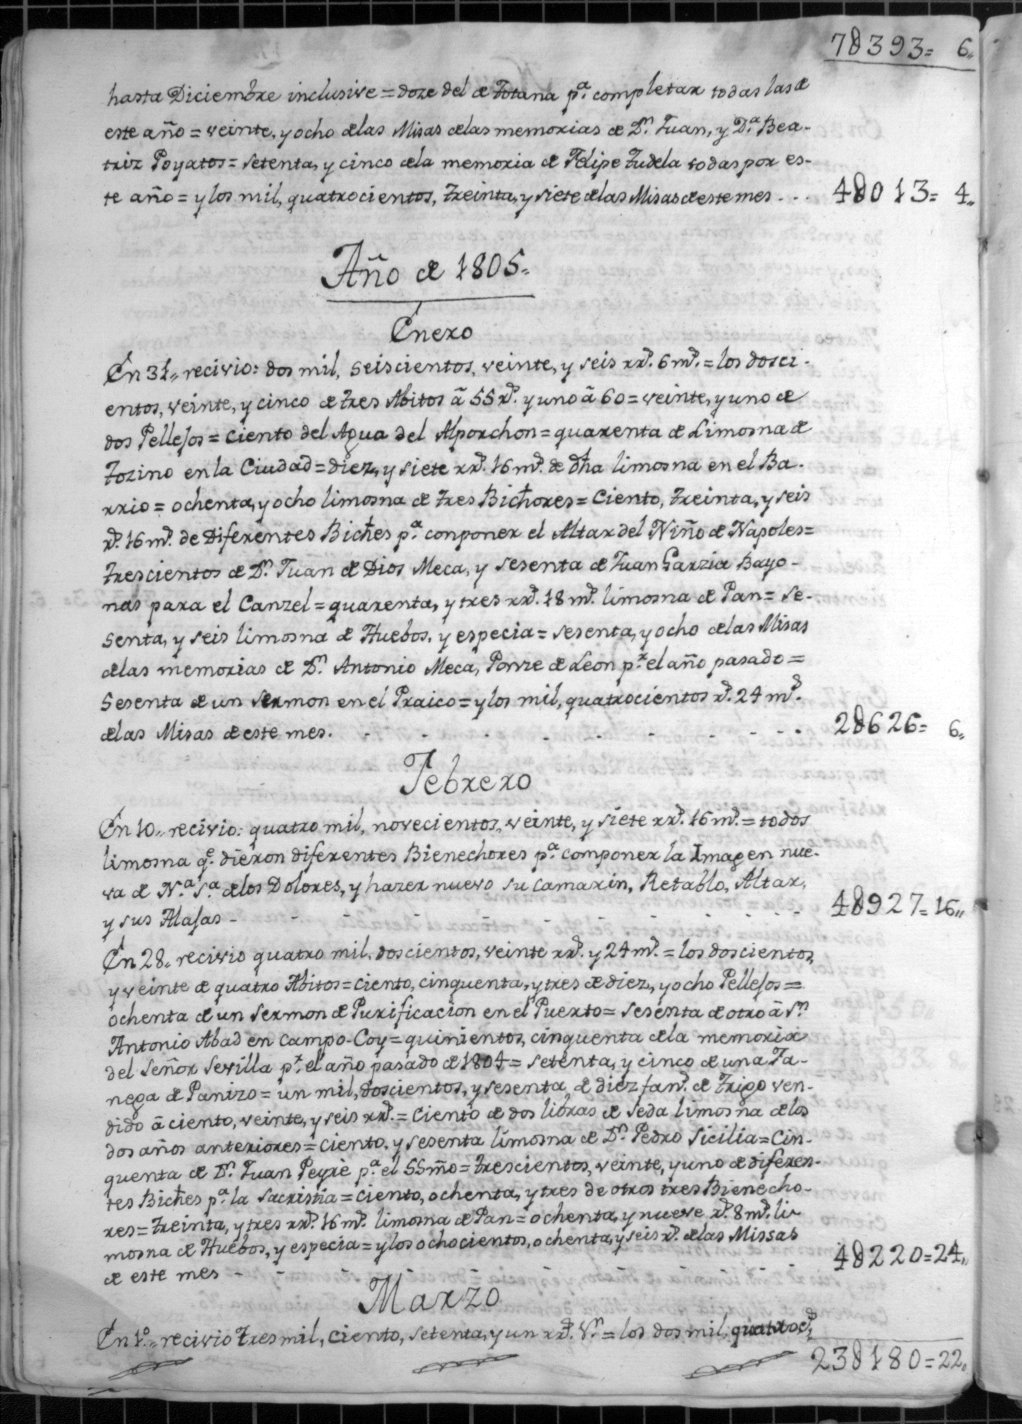 Cuentas generales del Convento de los Desamparados de Lorca, dadas por Jaime Clavere de Casou, síndico, a Juan Guirao, guardián. Años 1800-1835.